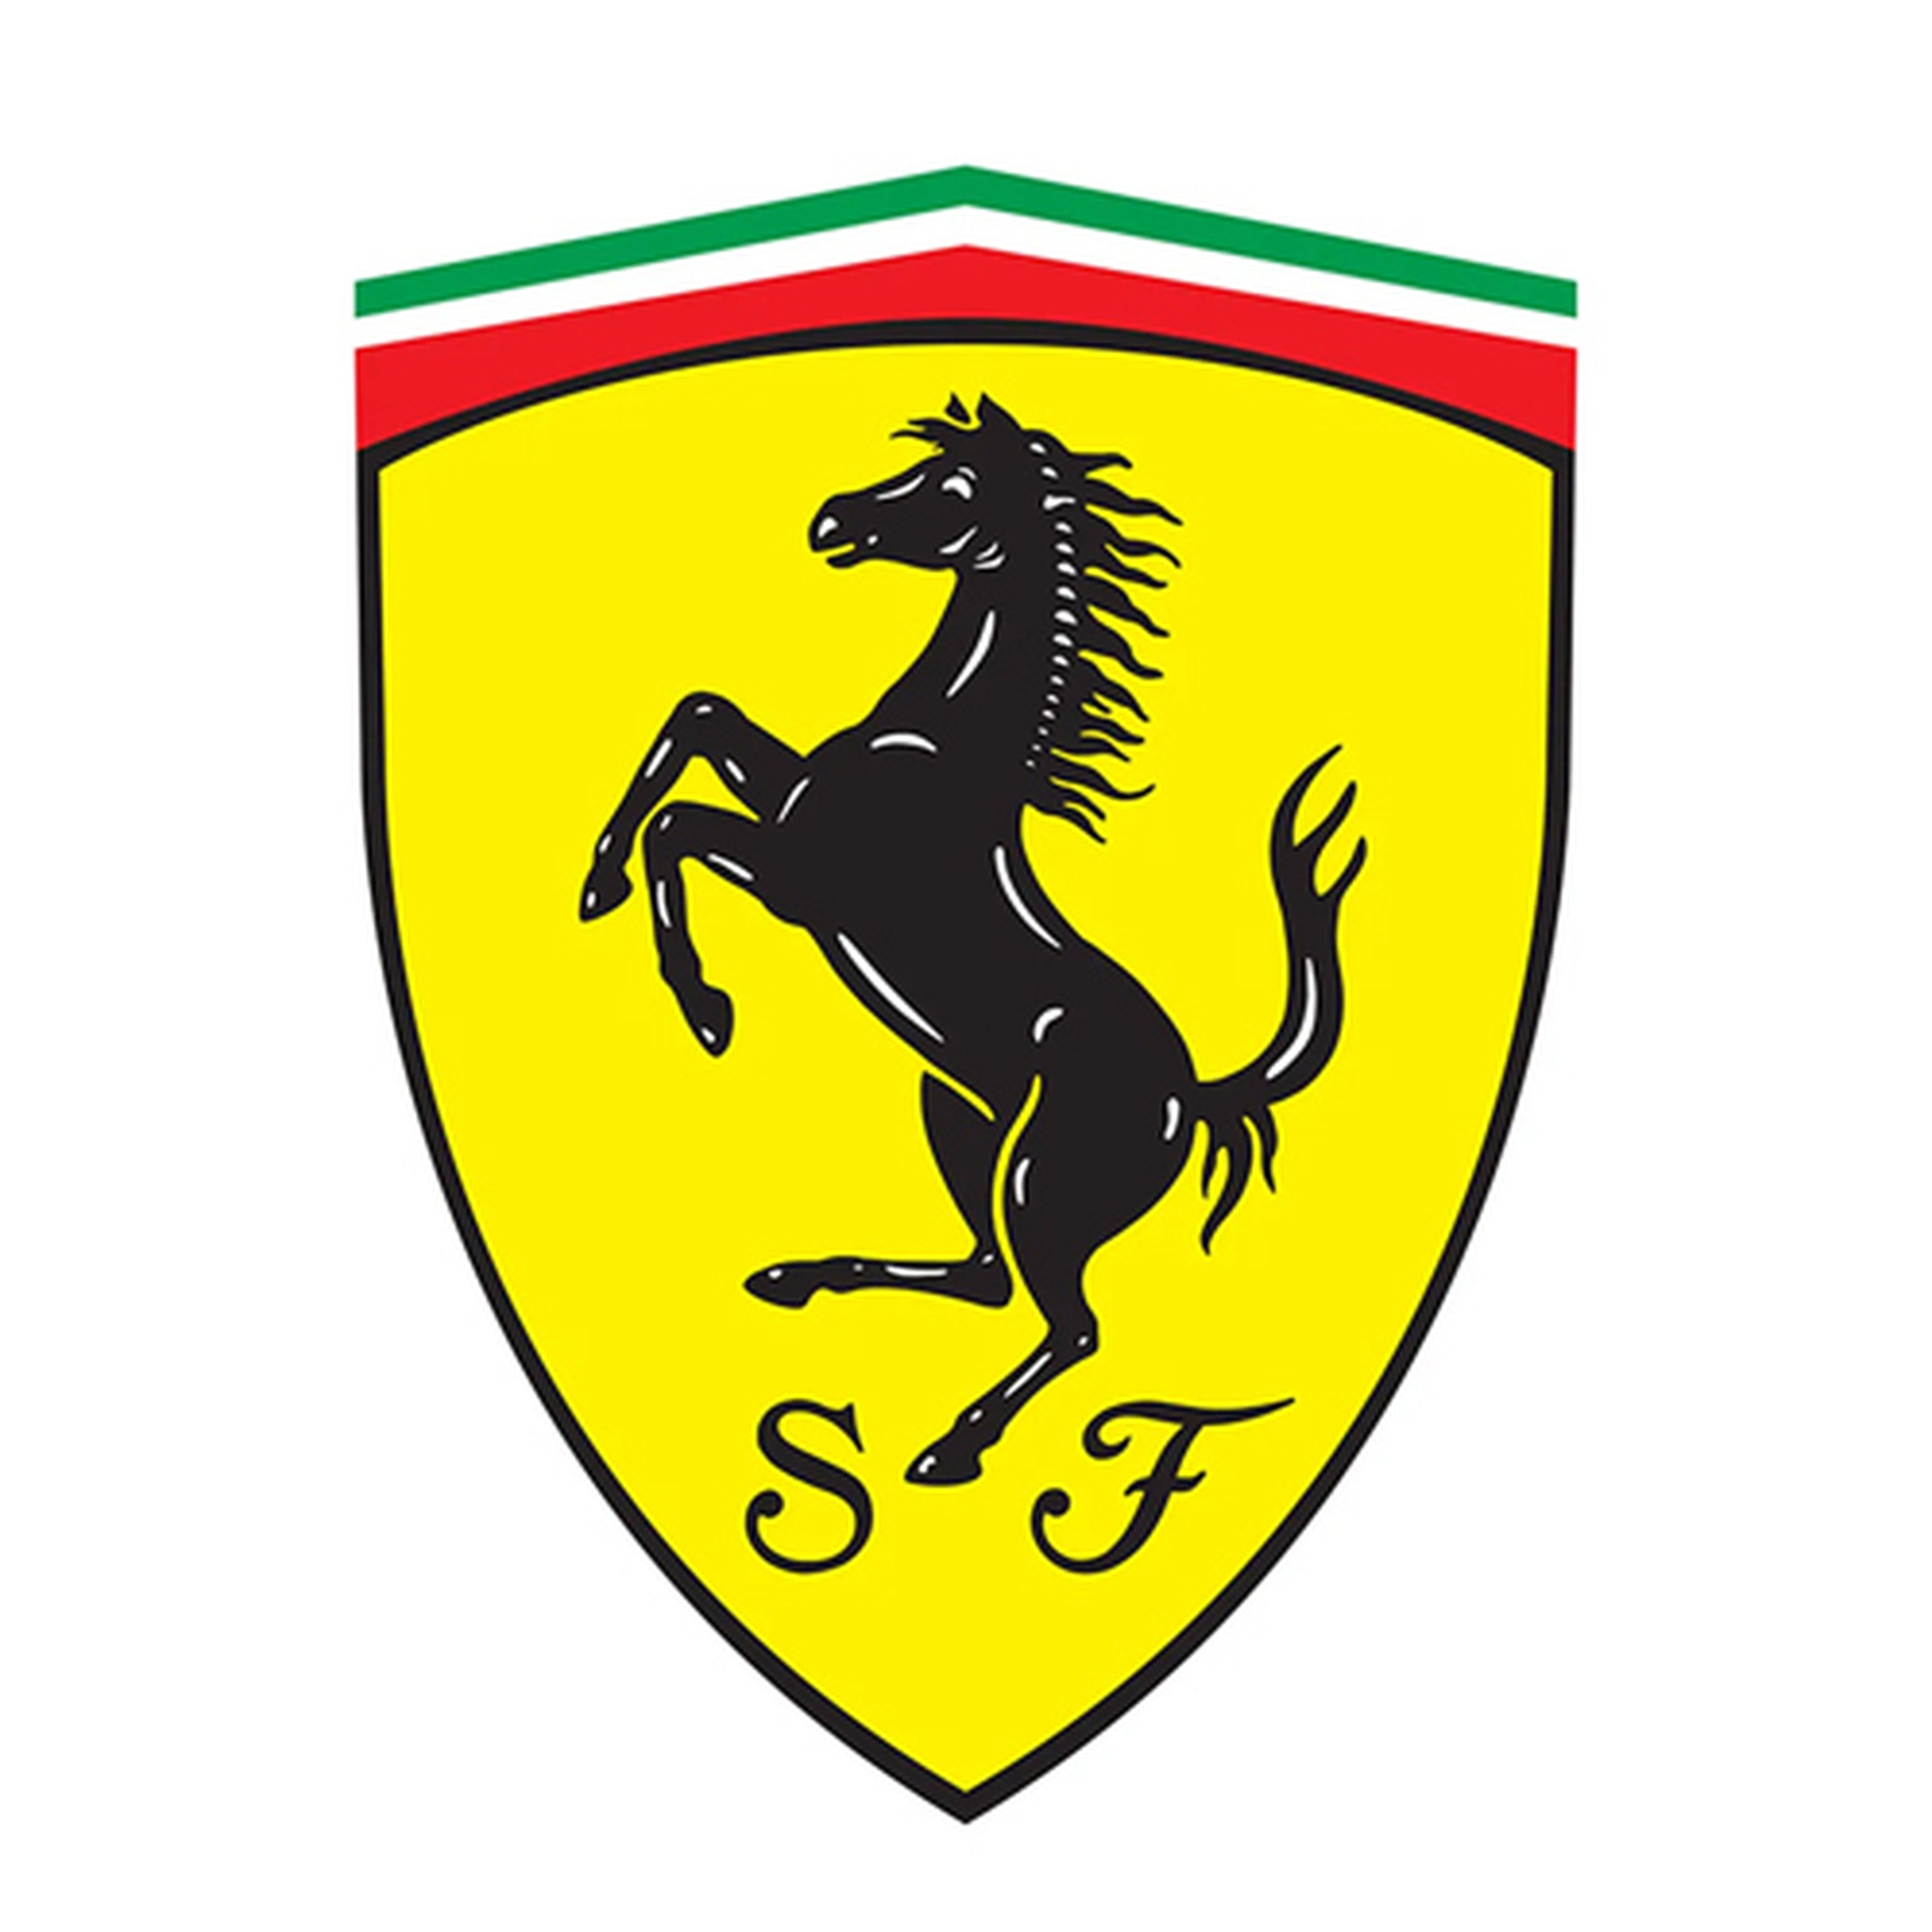 Ferrari_0